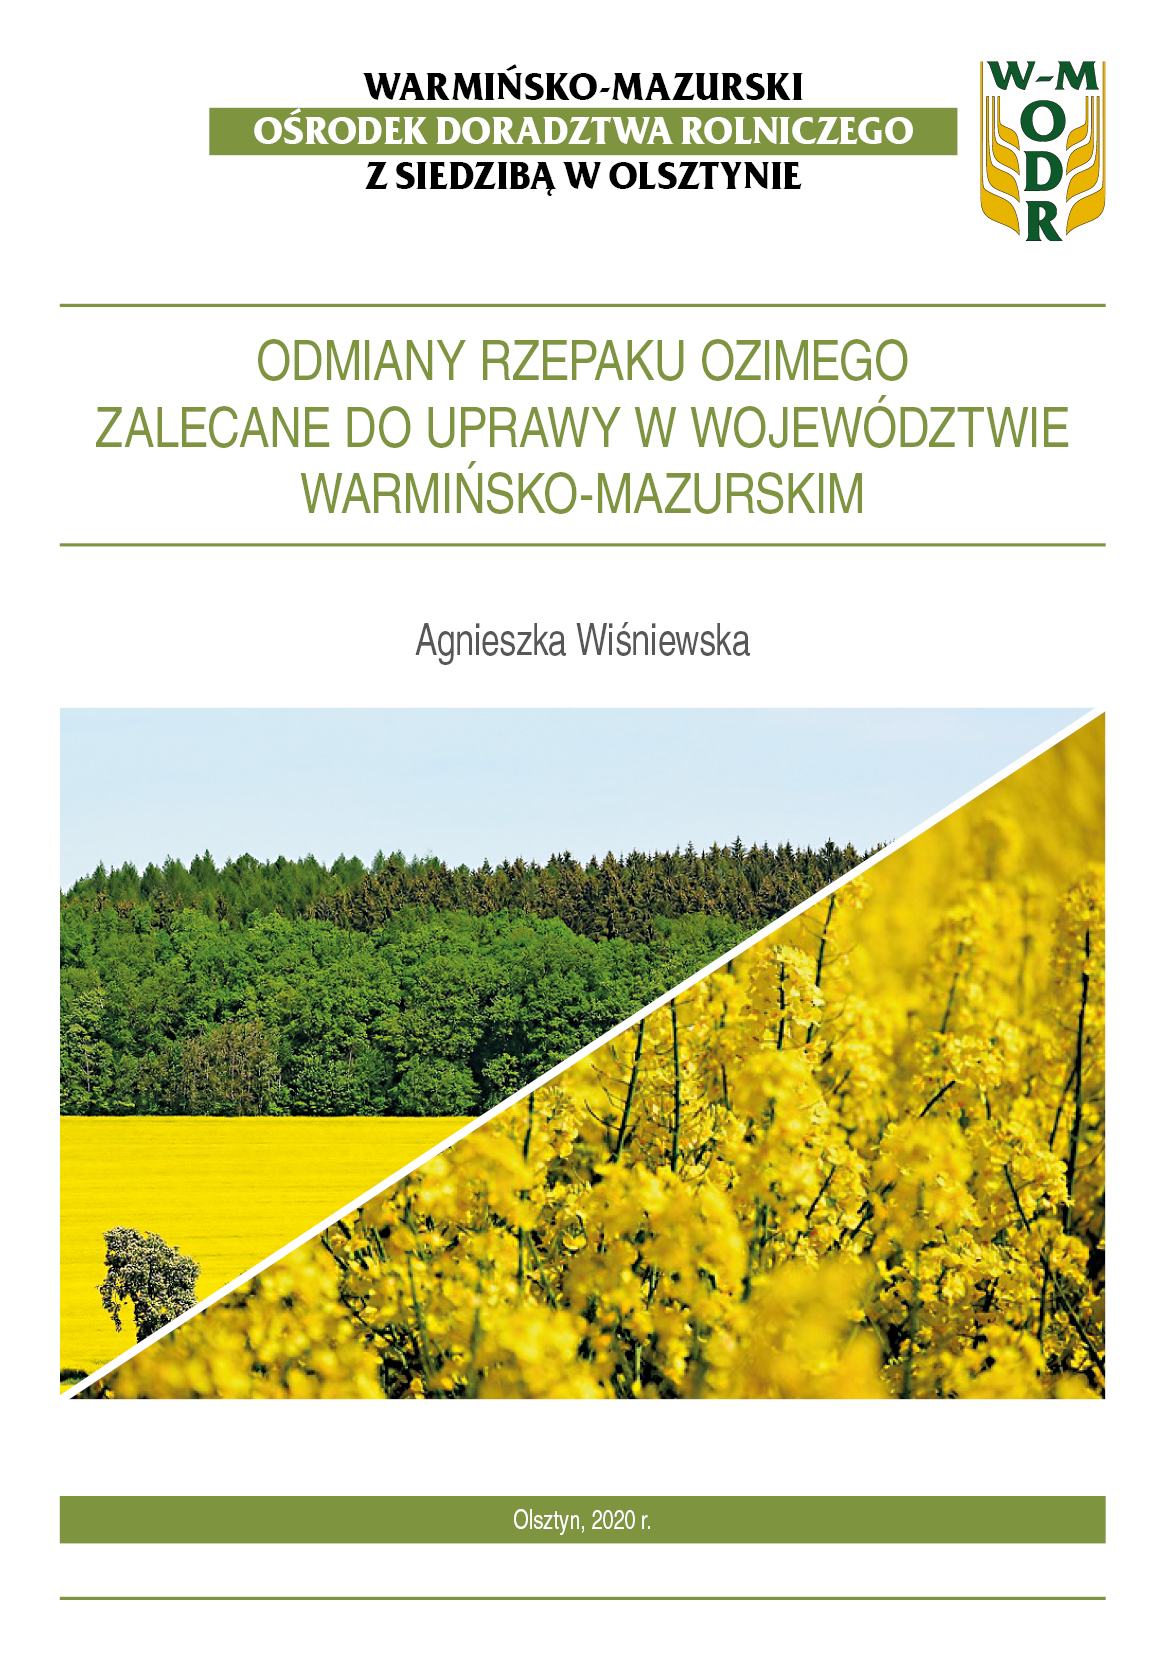 Odmiany rzepaku ozimego zalecane do uprawy w województwie warmińsko-mazurskim